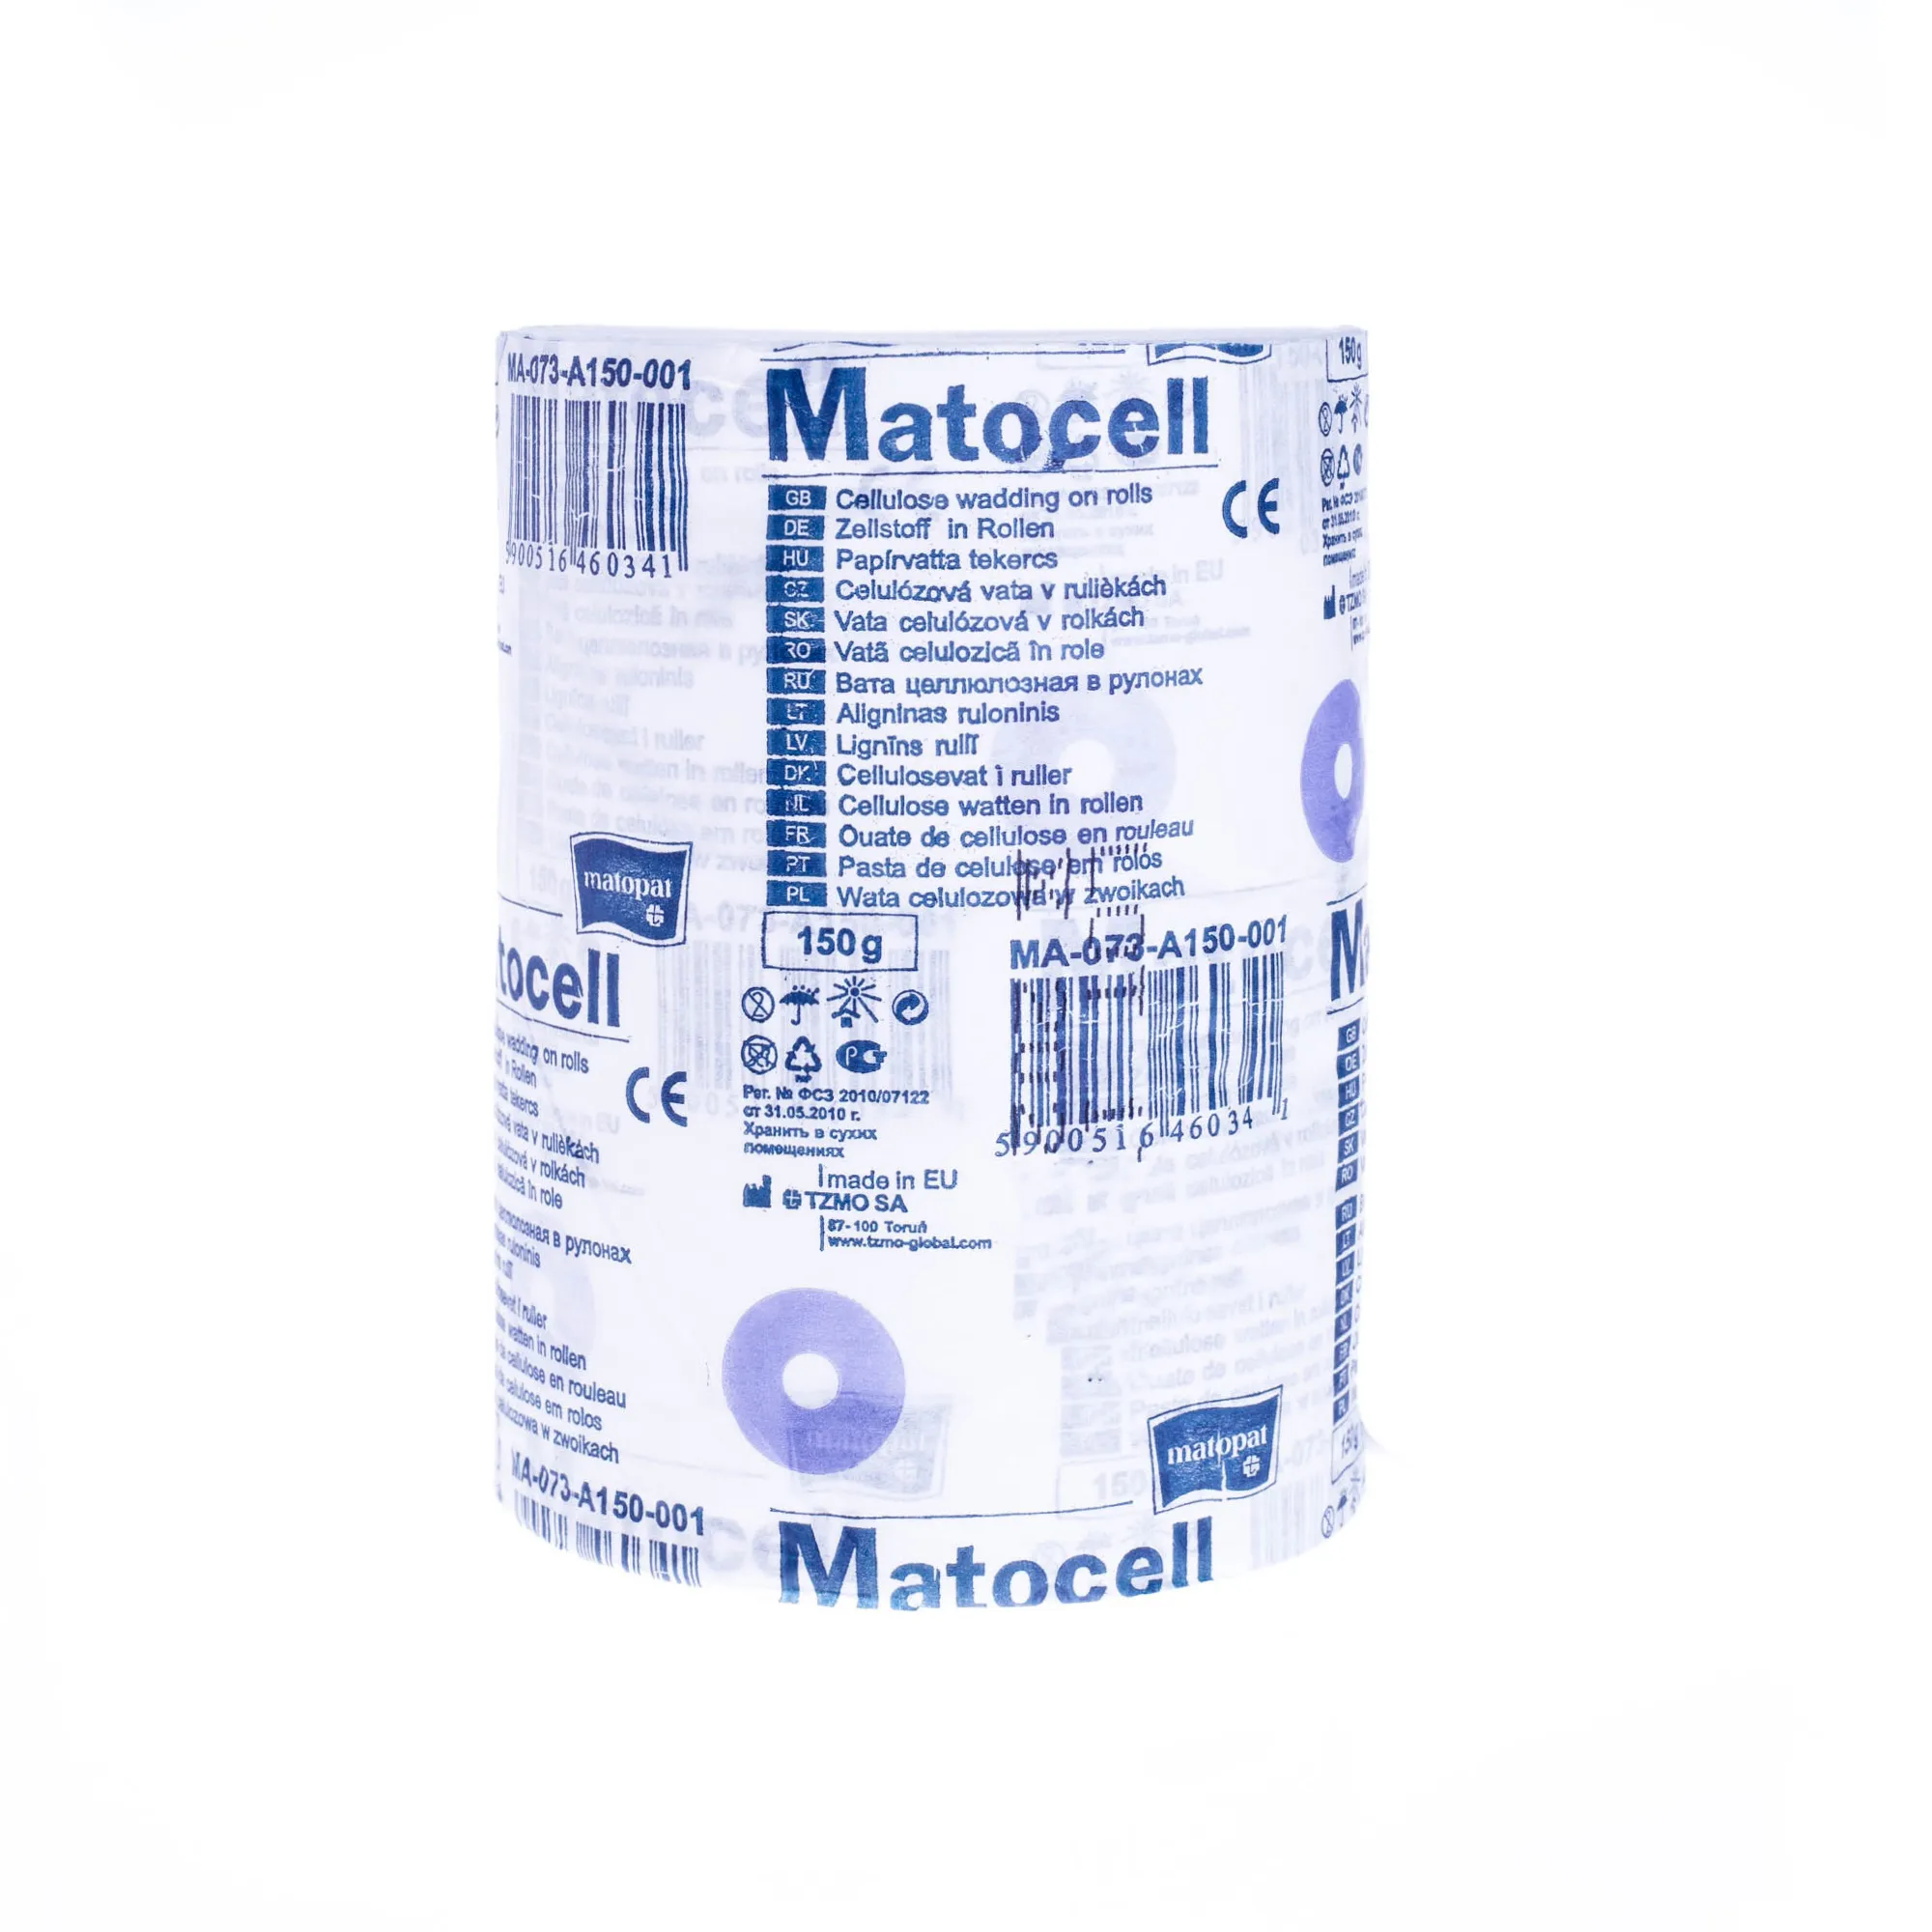 Matocell -  ligniana, wata celulozowa w zwoju 150 g